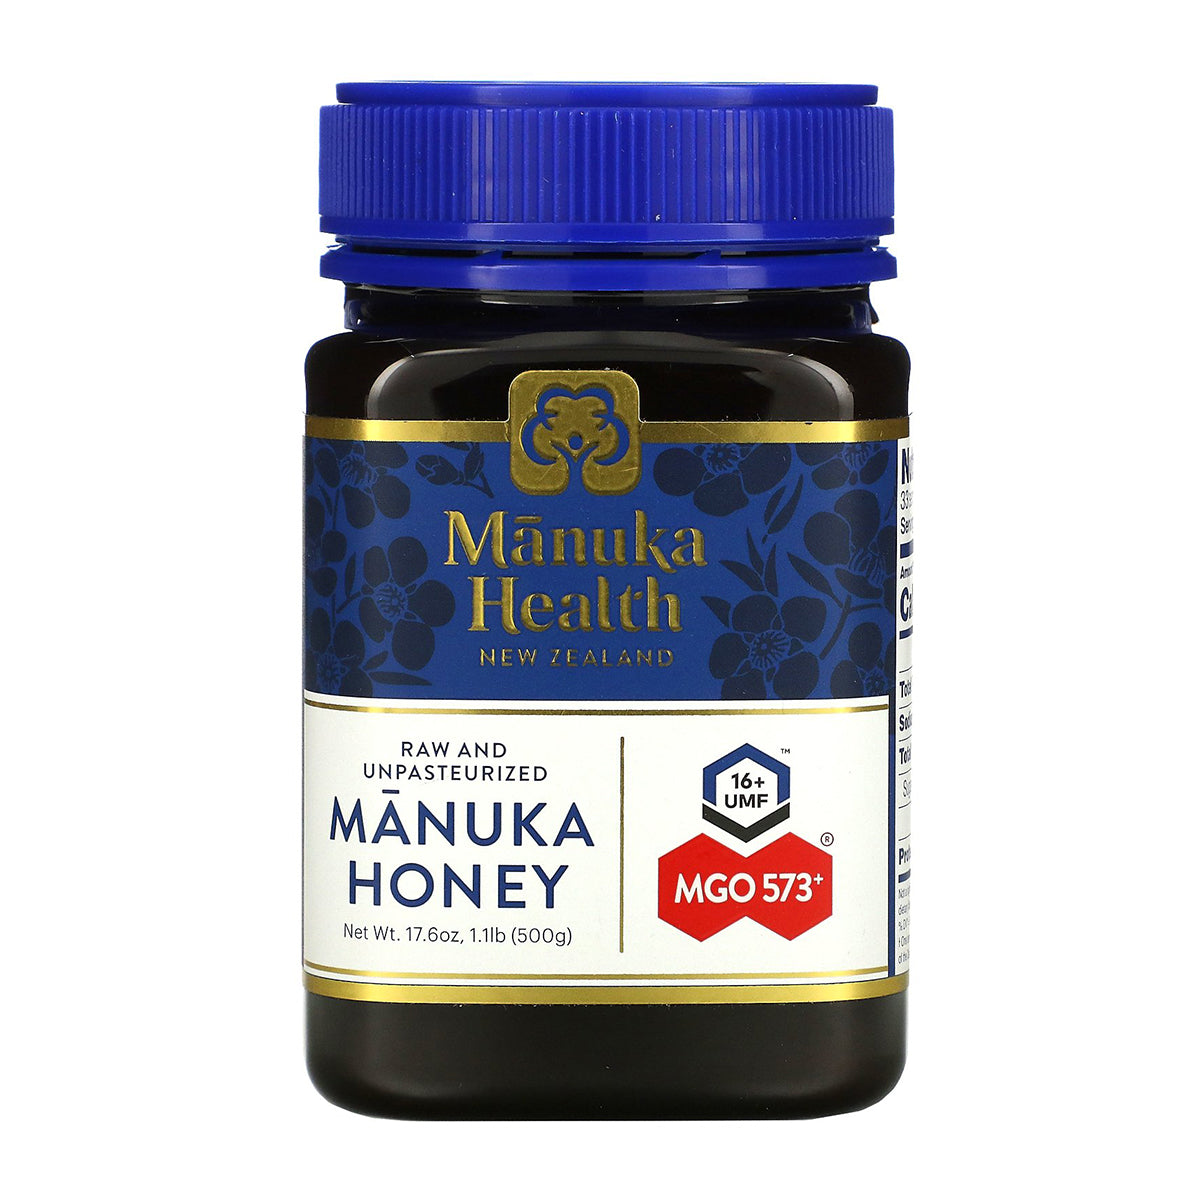 manuka health manuka honey 30+ umf 3+ 500g